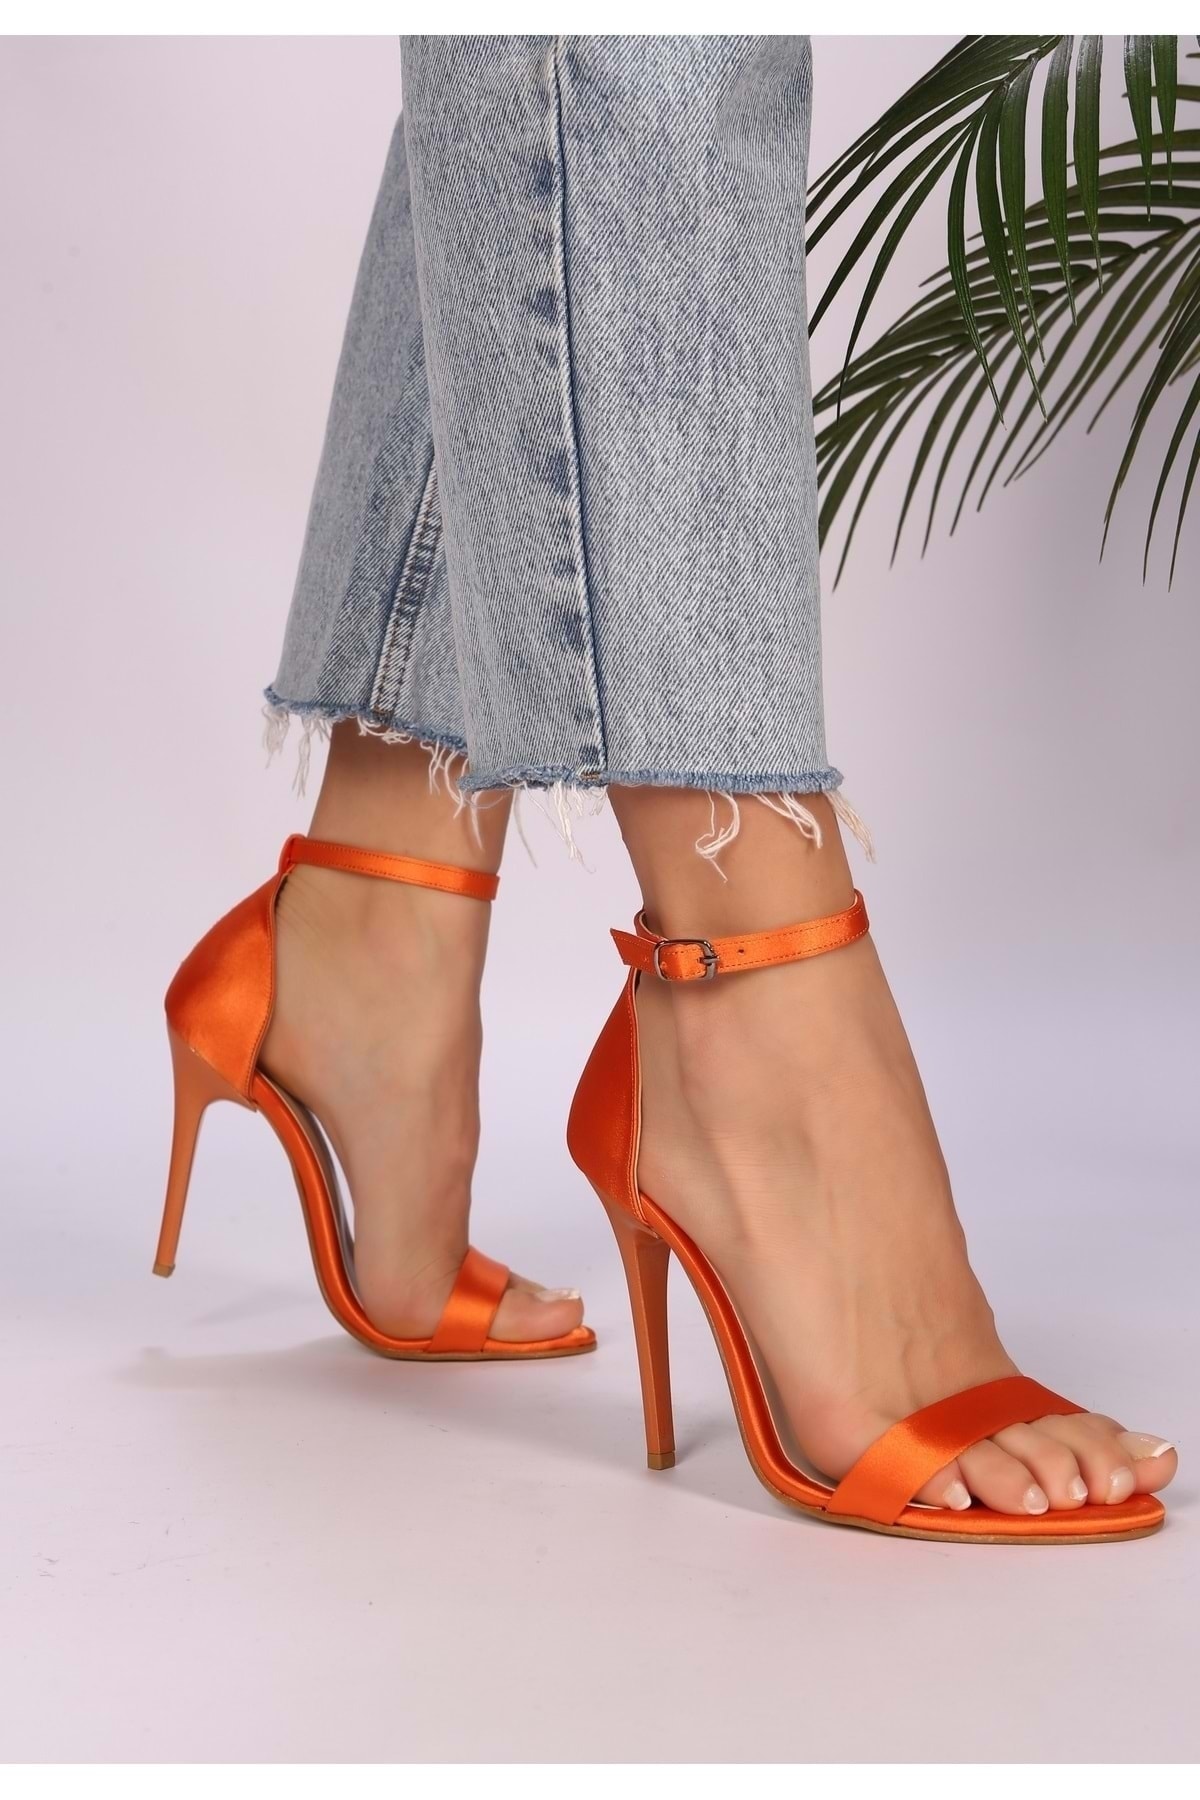 Shoeberry Women's Slyva Orange Satin Single Strap Heeled Shoes